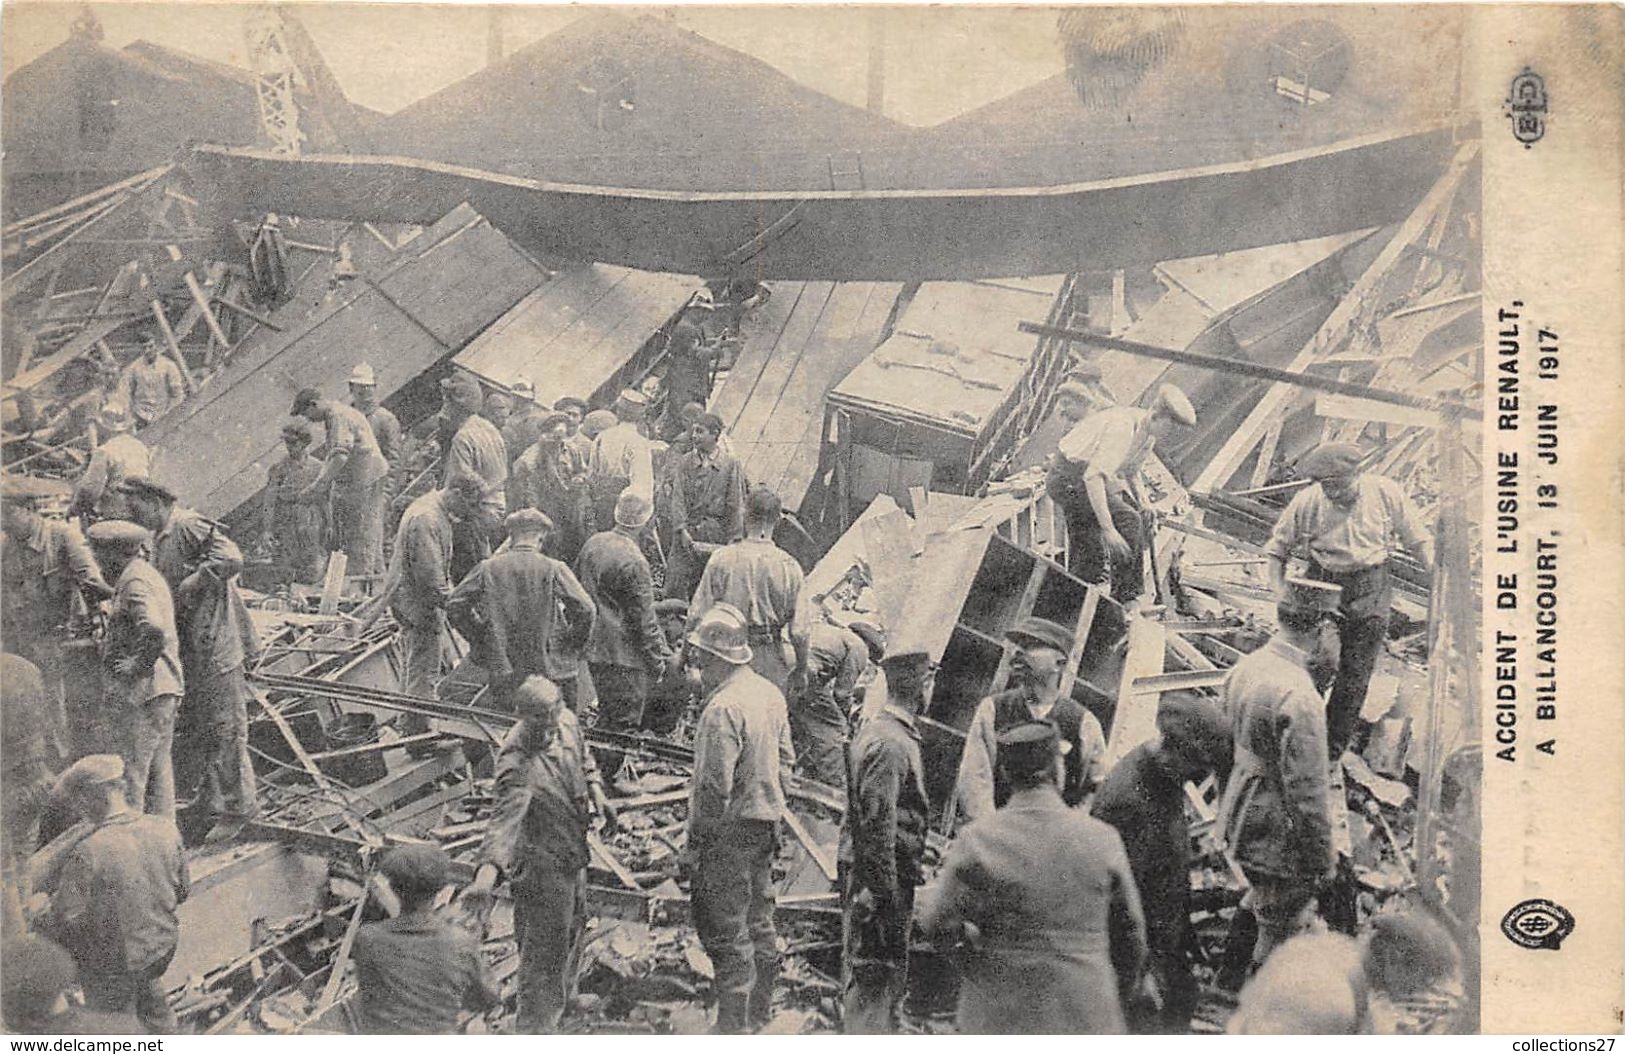 92-BOULOGNE-BILLANCOURT- ACCIDENT DE L'USINE RENAULT A BILLANCOURT 15 JUIN 1917 - Boulogne Billancourt